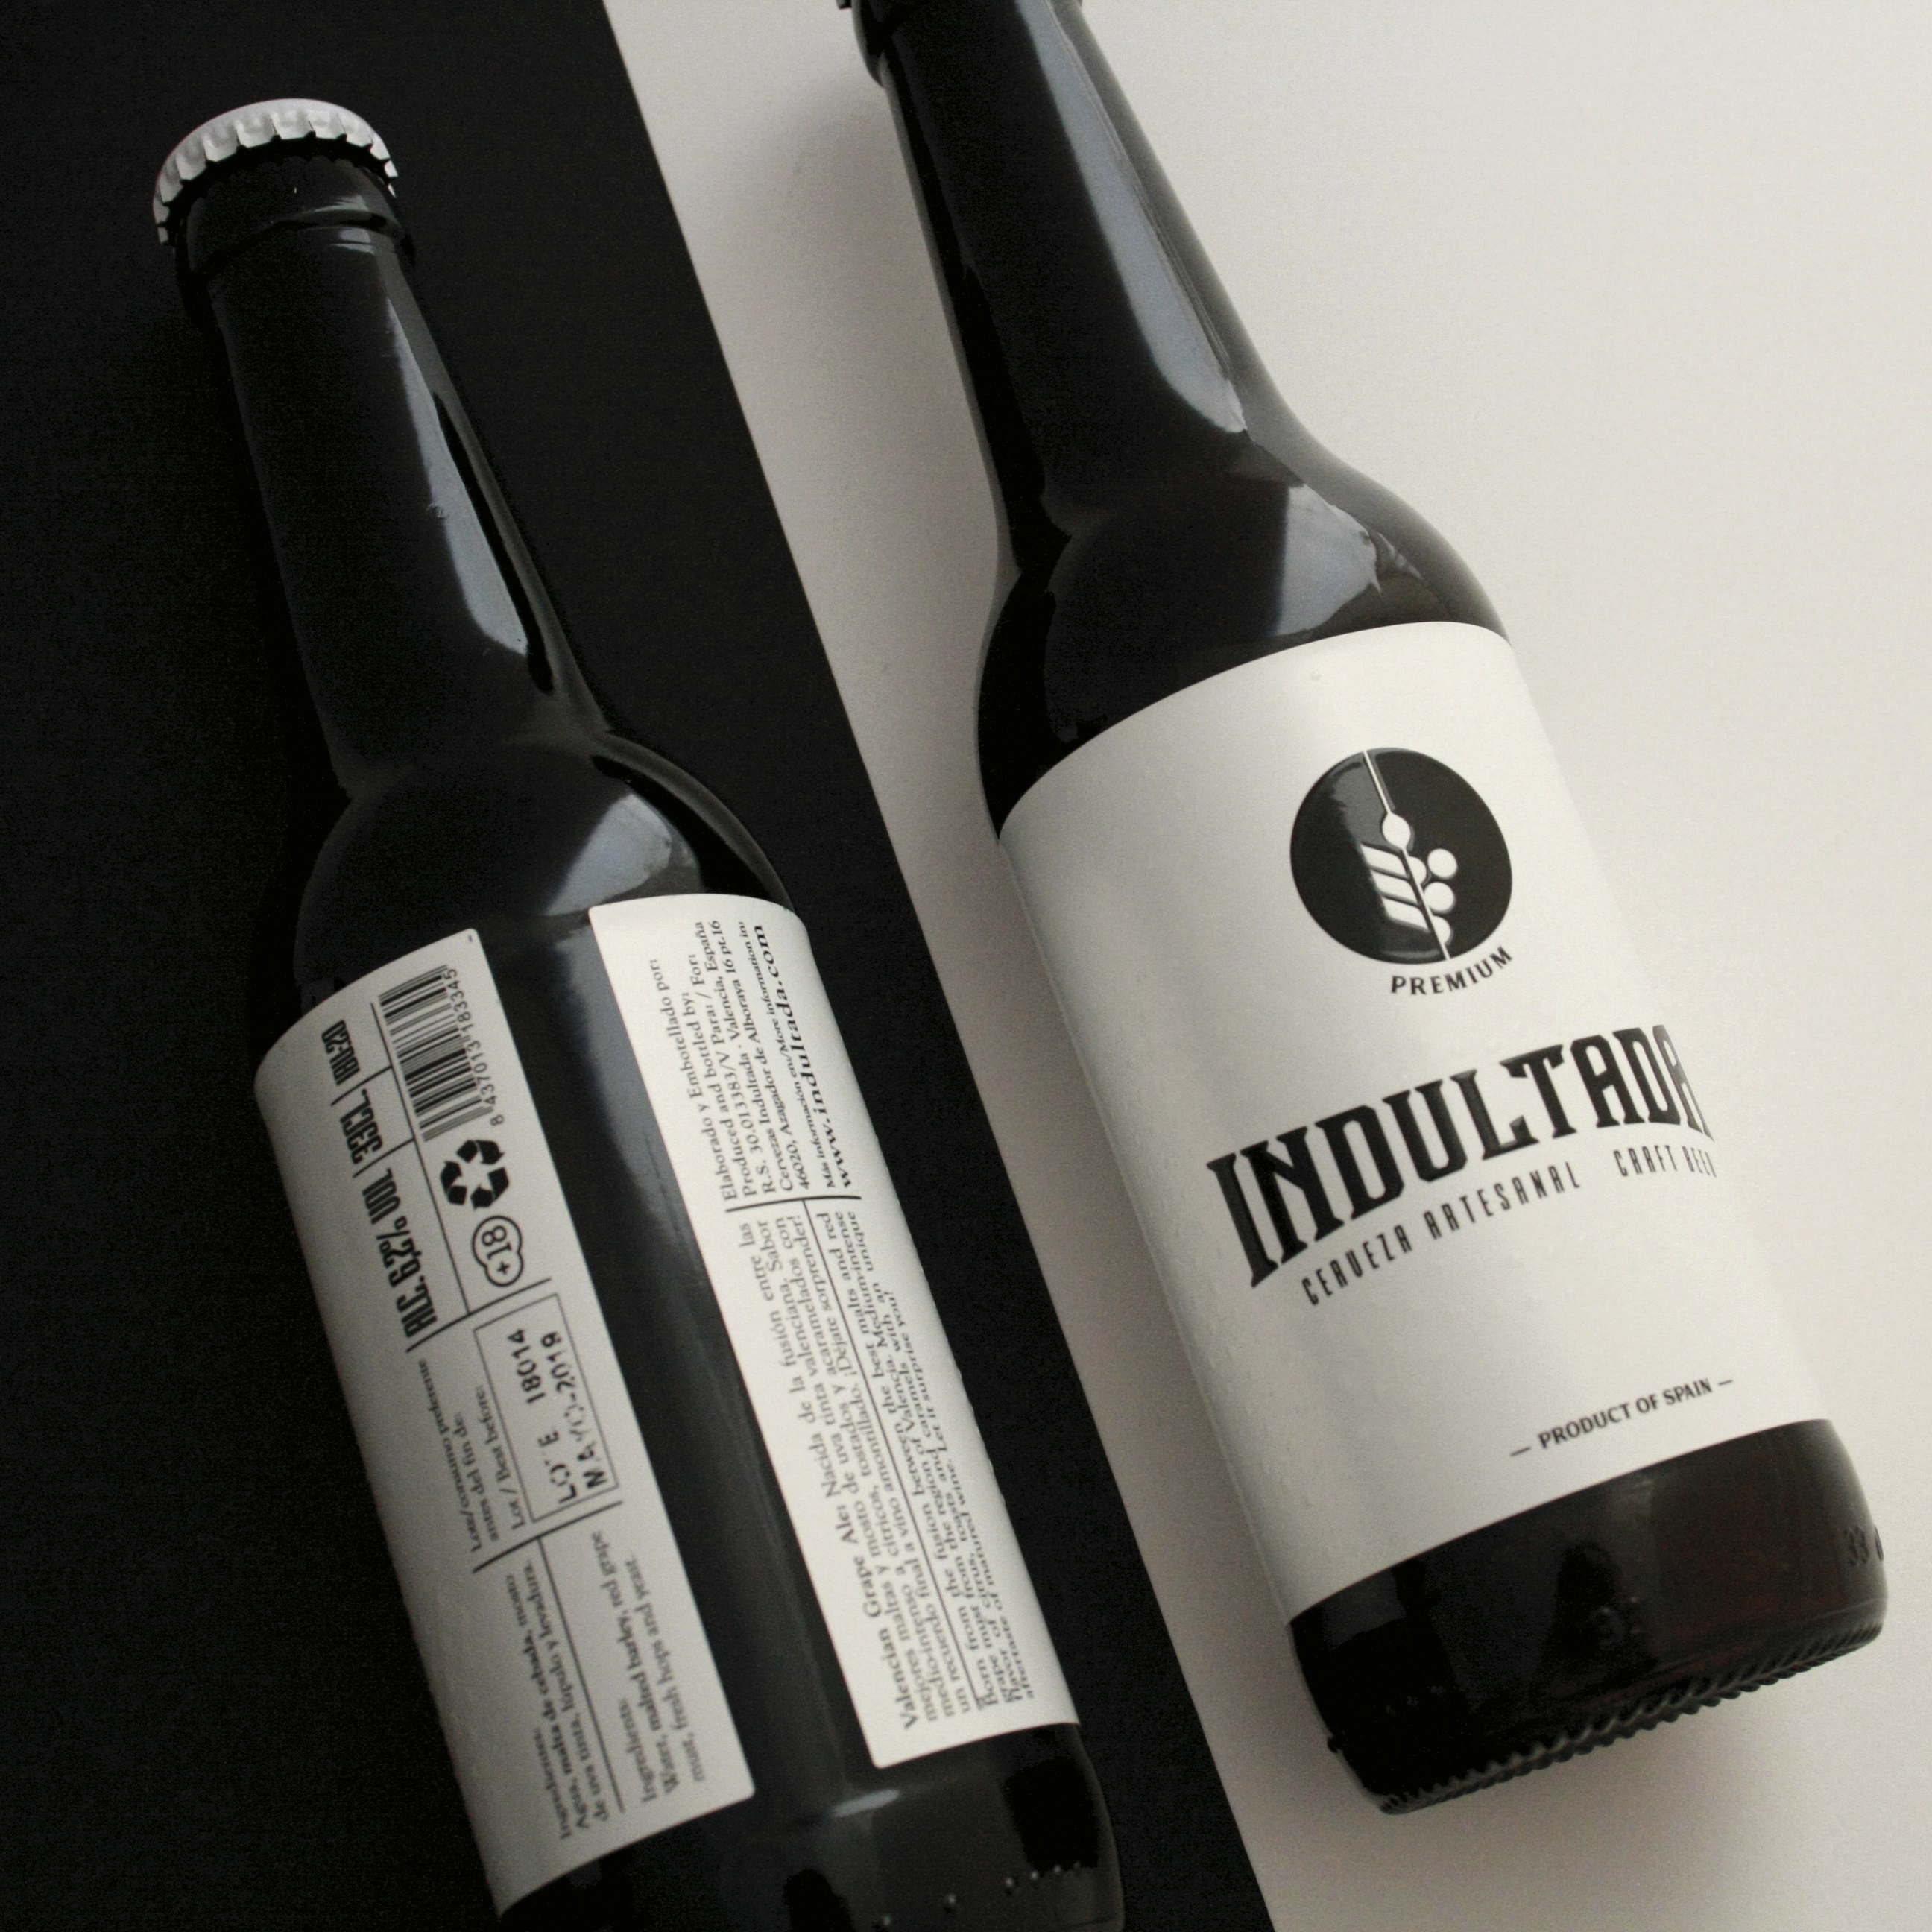 Diseño etiqueta cerveza valencia españa